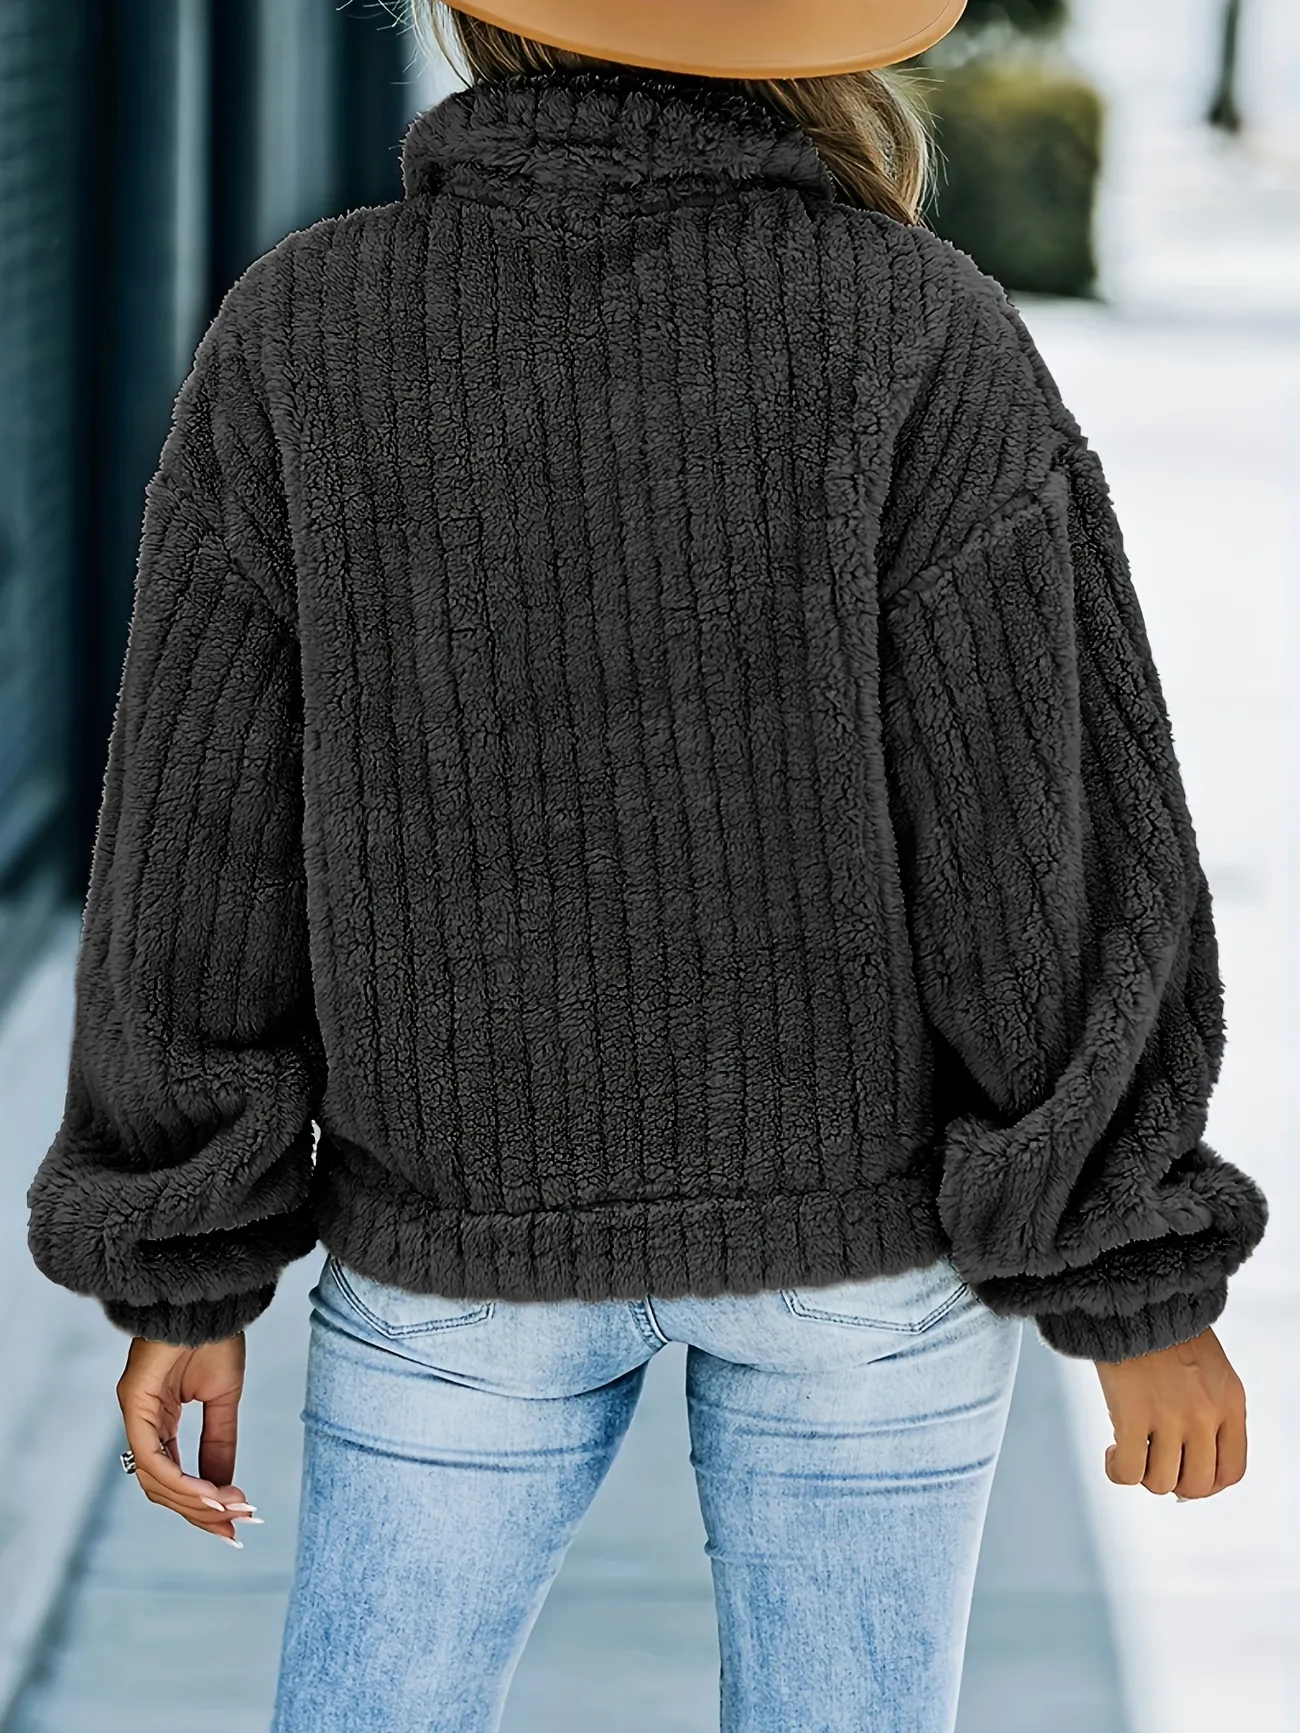 chunky knit trucker jacket